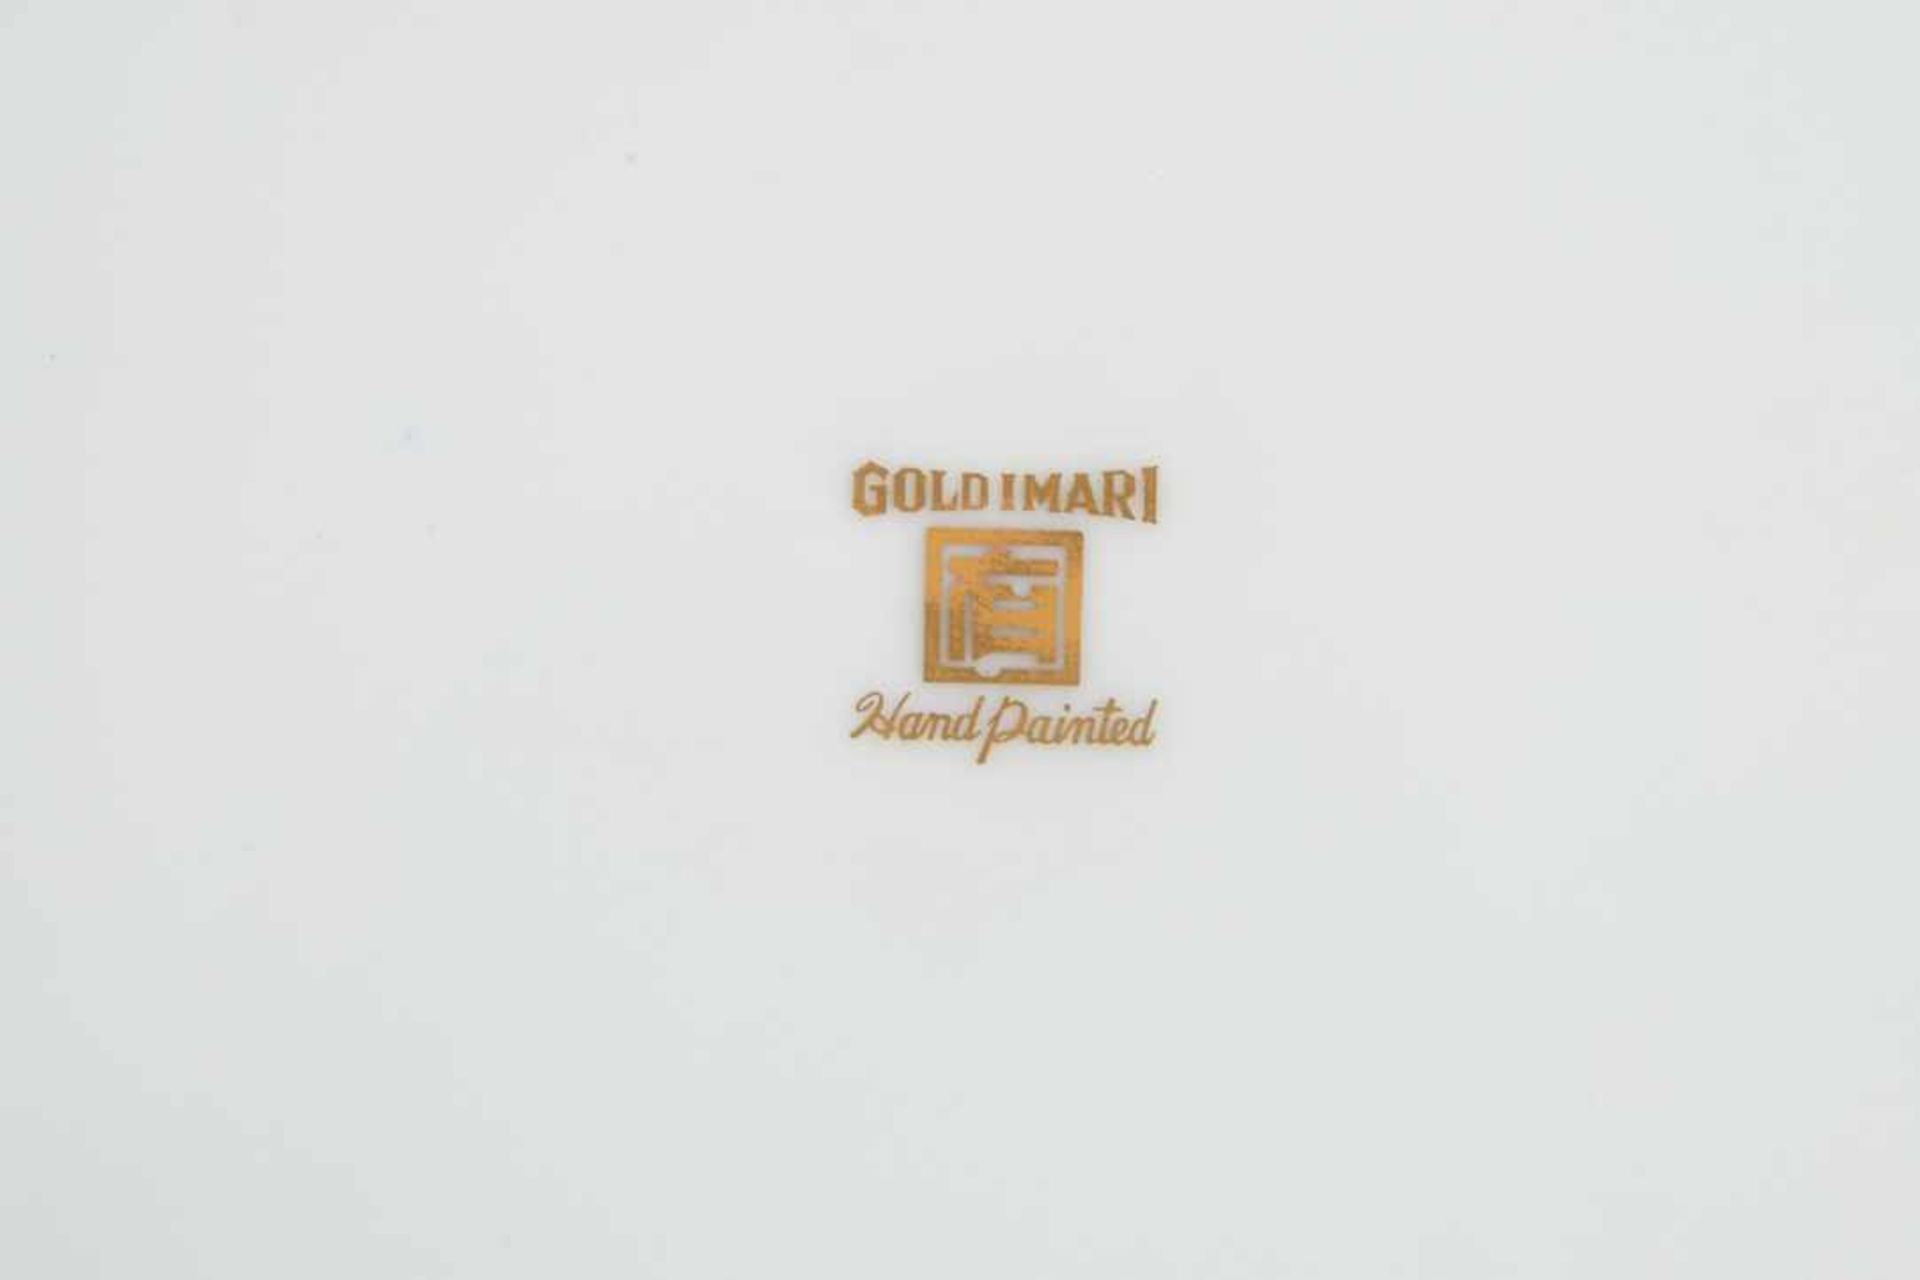 Gold-Imari. Zierteller. 20. Jahrhundert, gemarkt. Druchmesser 31,5 cm. - Bild 4 aus 7